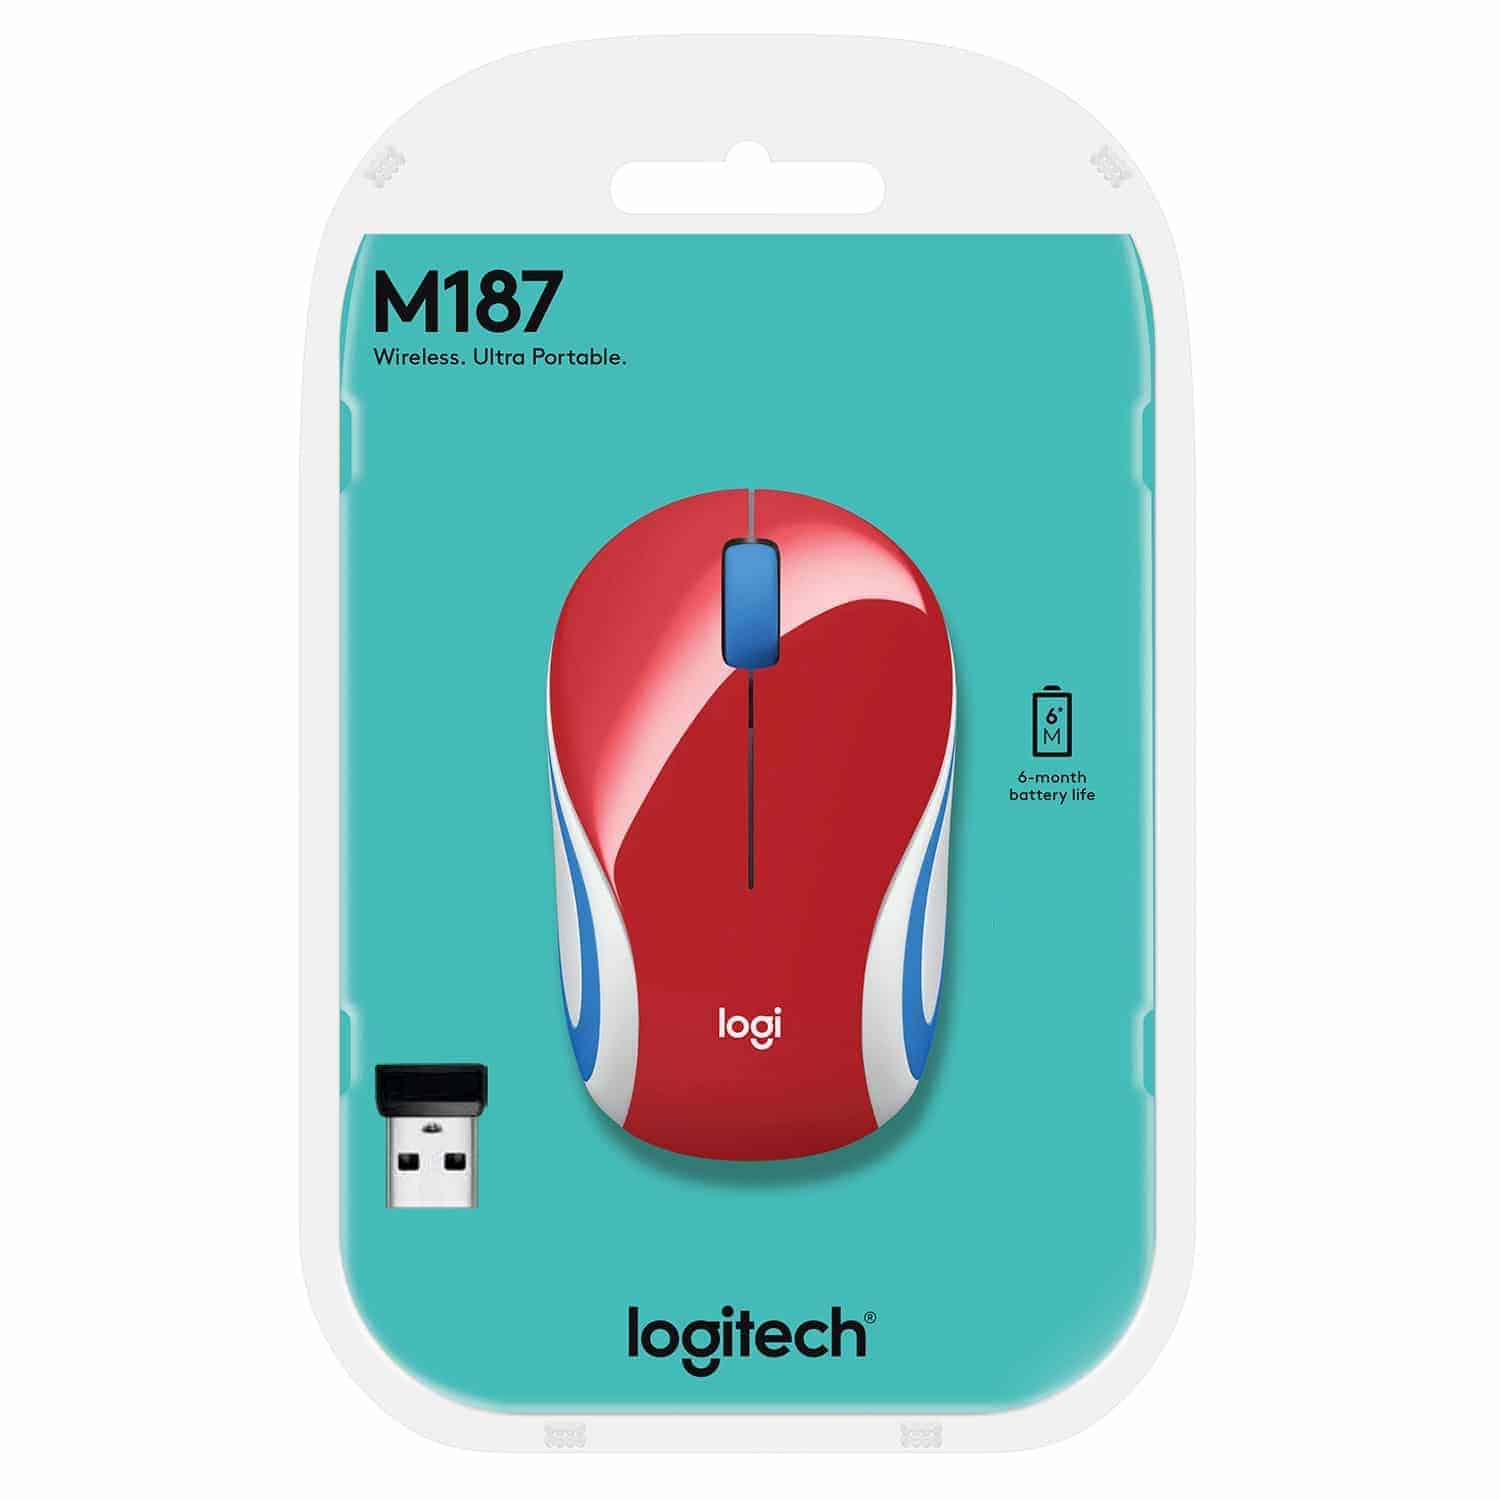 Logitech wireless mini mouse m187 blue-orange usb купить по акционной цене , отзывы и обзоры.